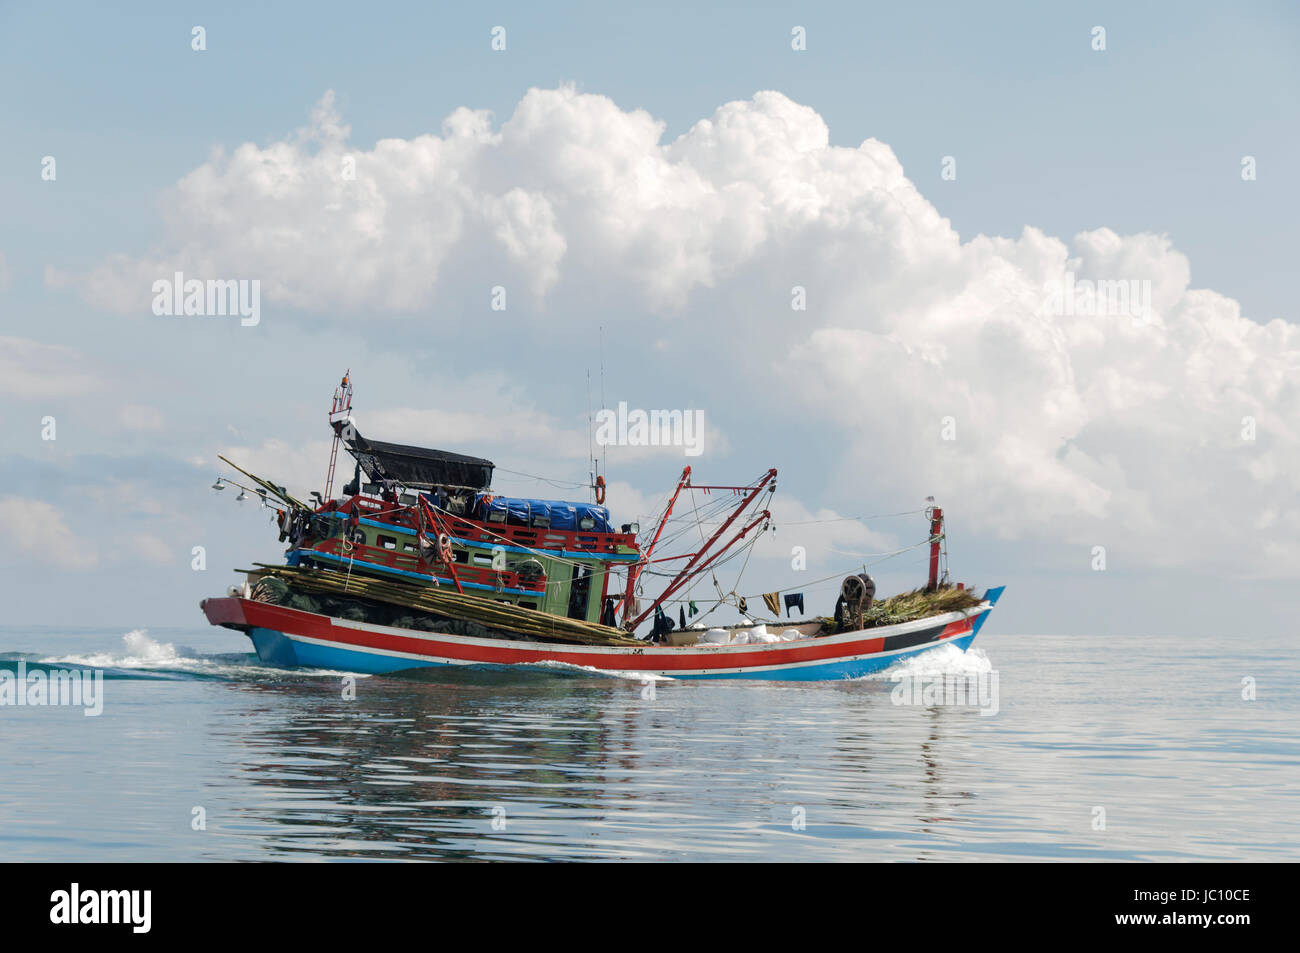 Fischerboot  auf dem Meer in voller Fahrt, Suedchinesisches Meer. Stock Photo